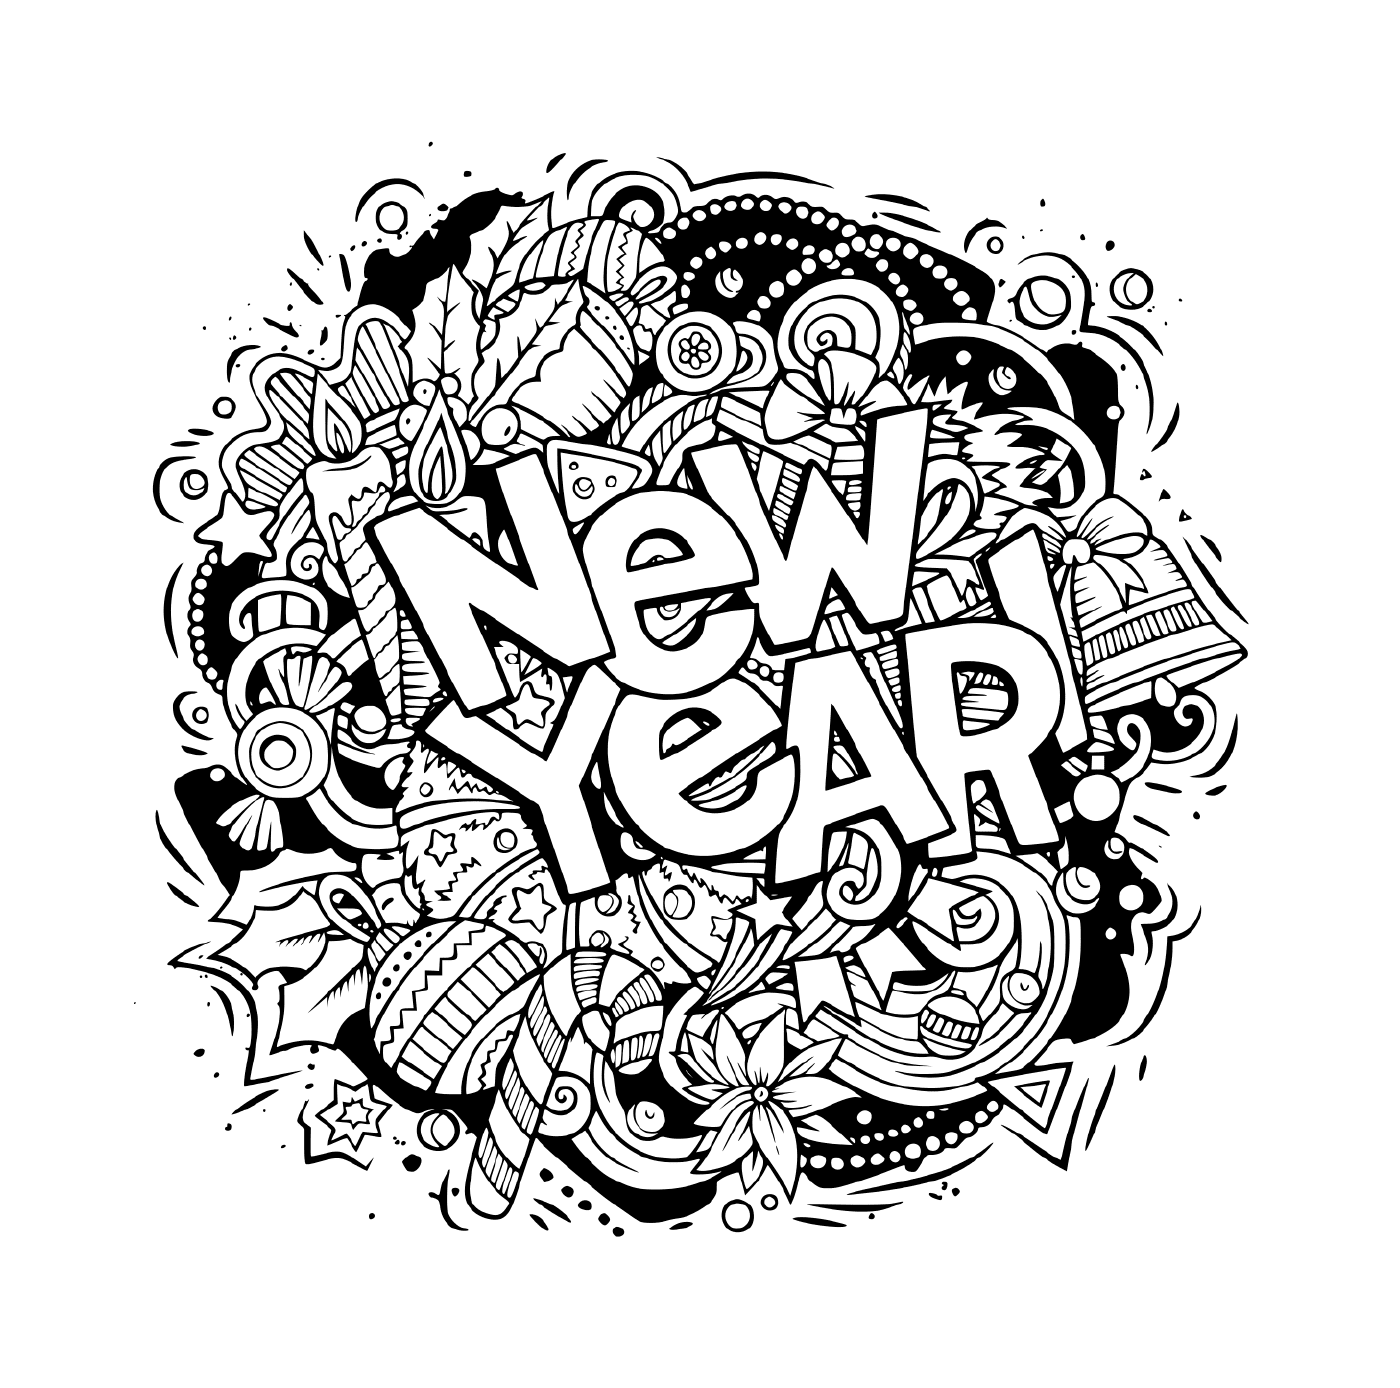  Doodles, oggetti ed elementi per il nuovo anno 